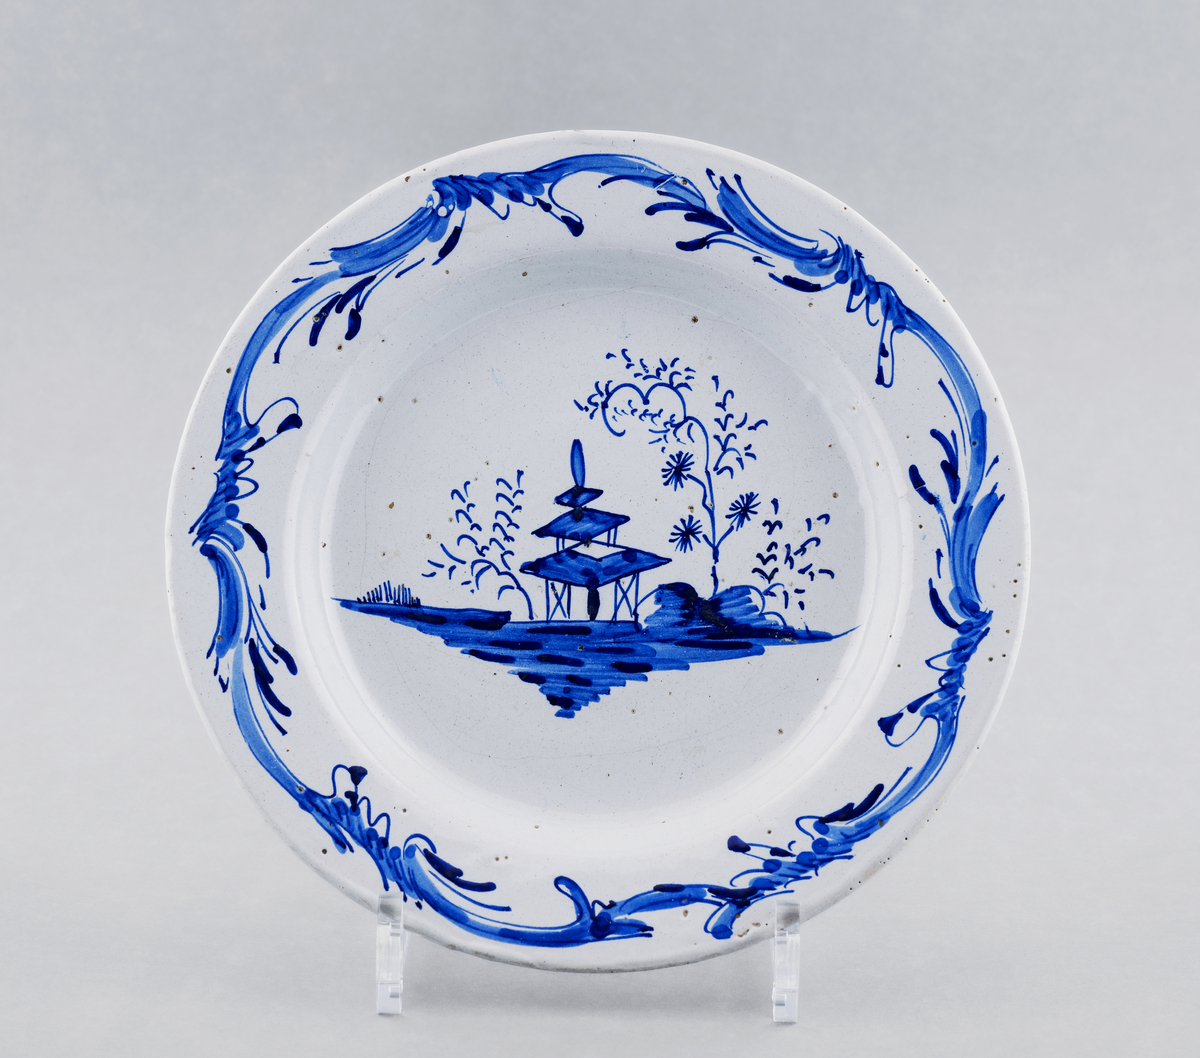 Fat / stor tallerken, flat med hvit glasur, dekorert i dyp blått med pagode og trær i bunnen, rokokkobord langs kanten.